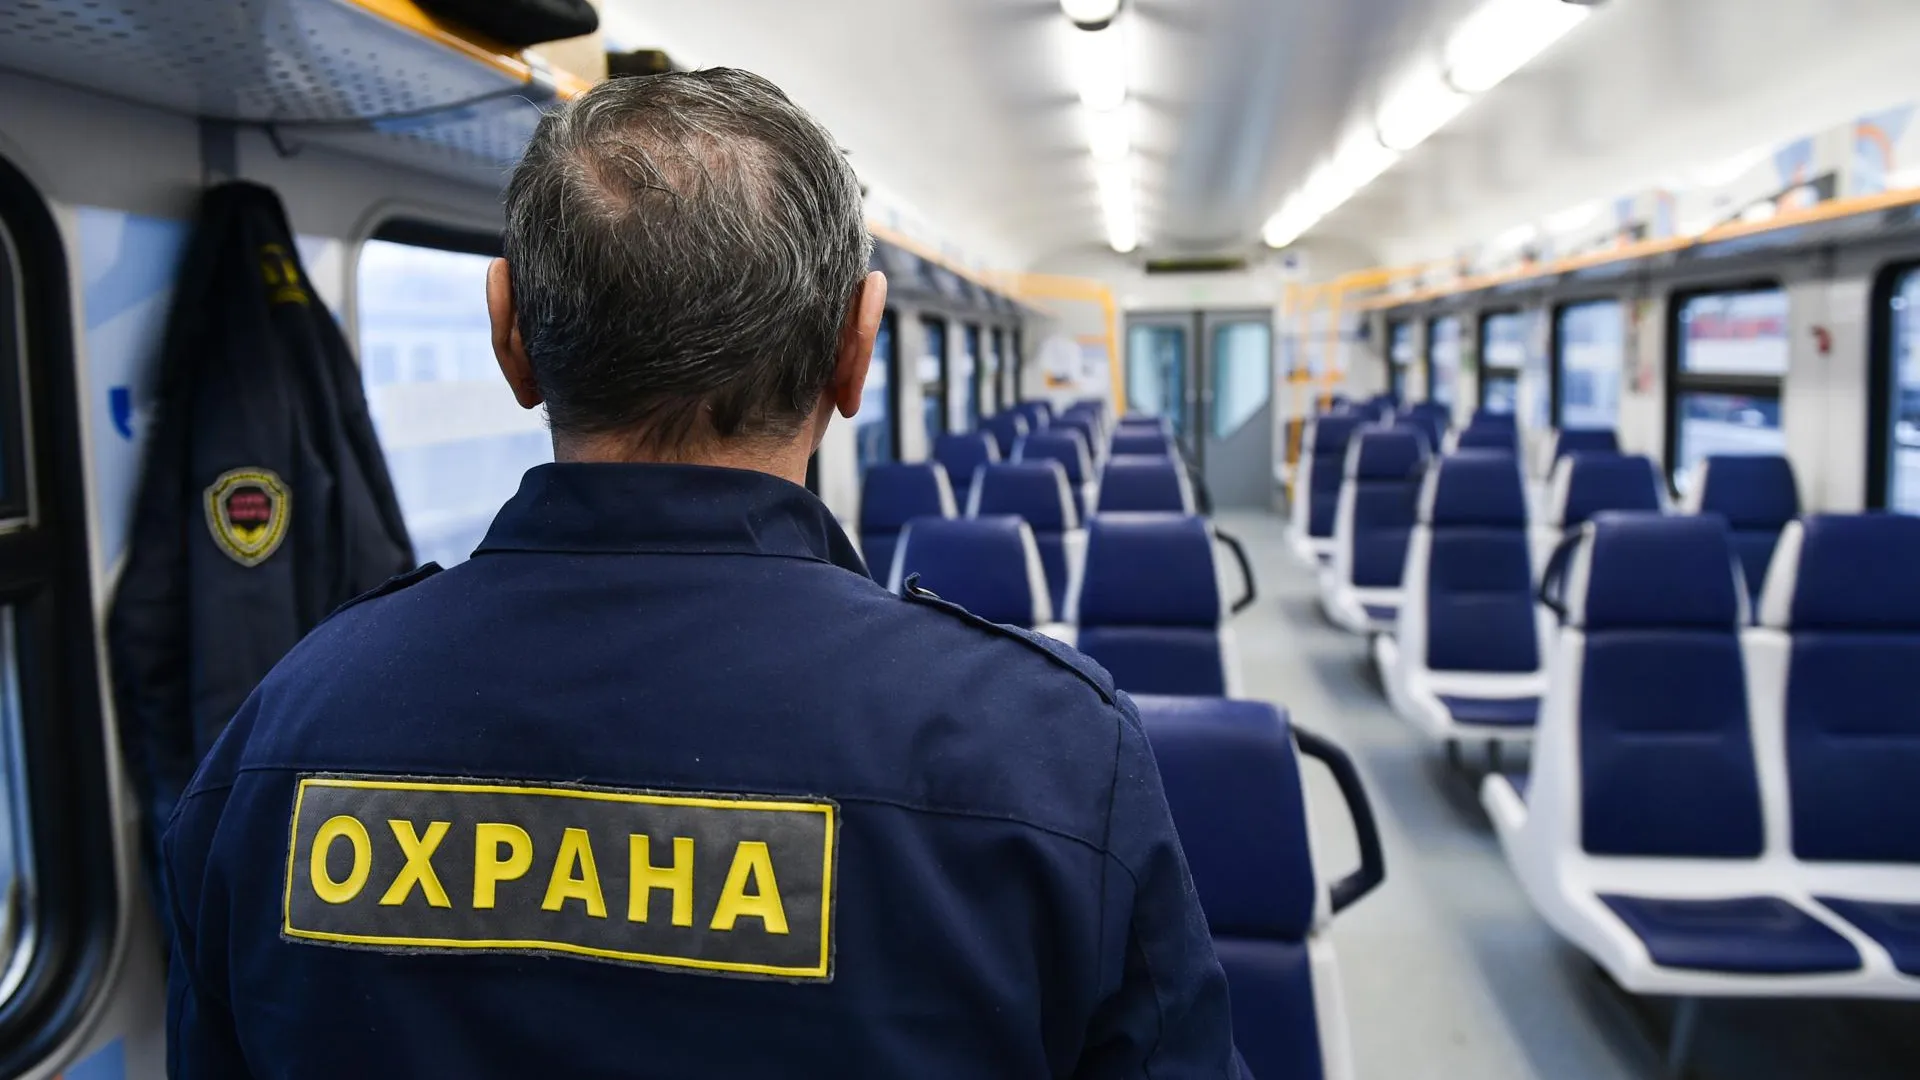 Более 100 попыток кражи предотвратили на Московской железной дороге за полгода